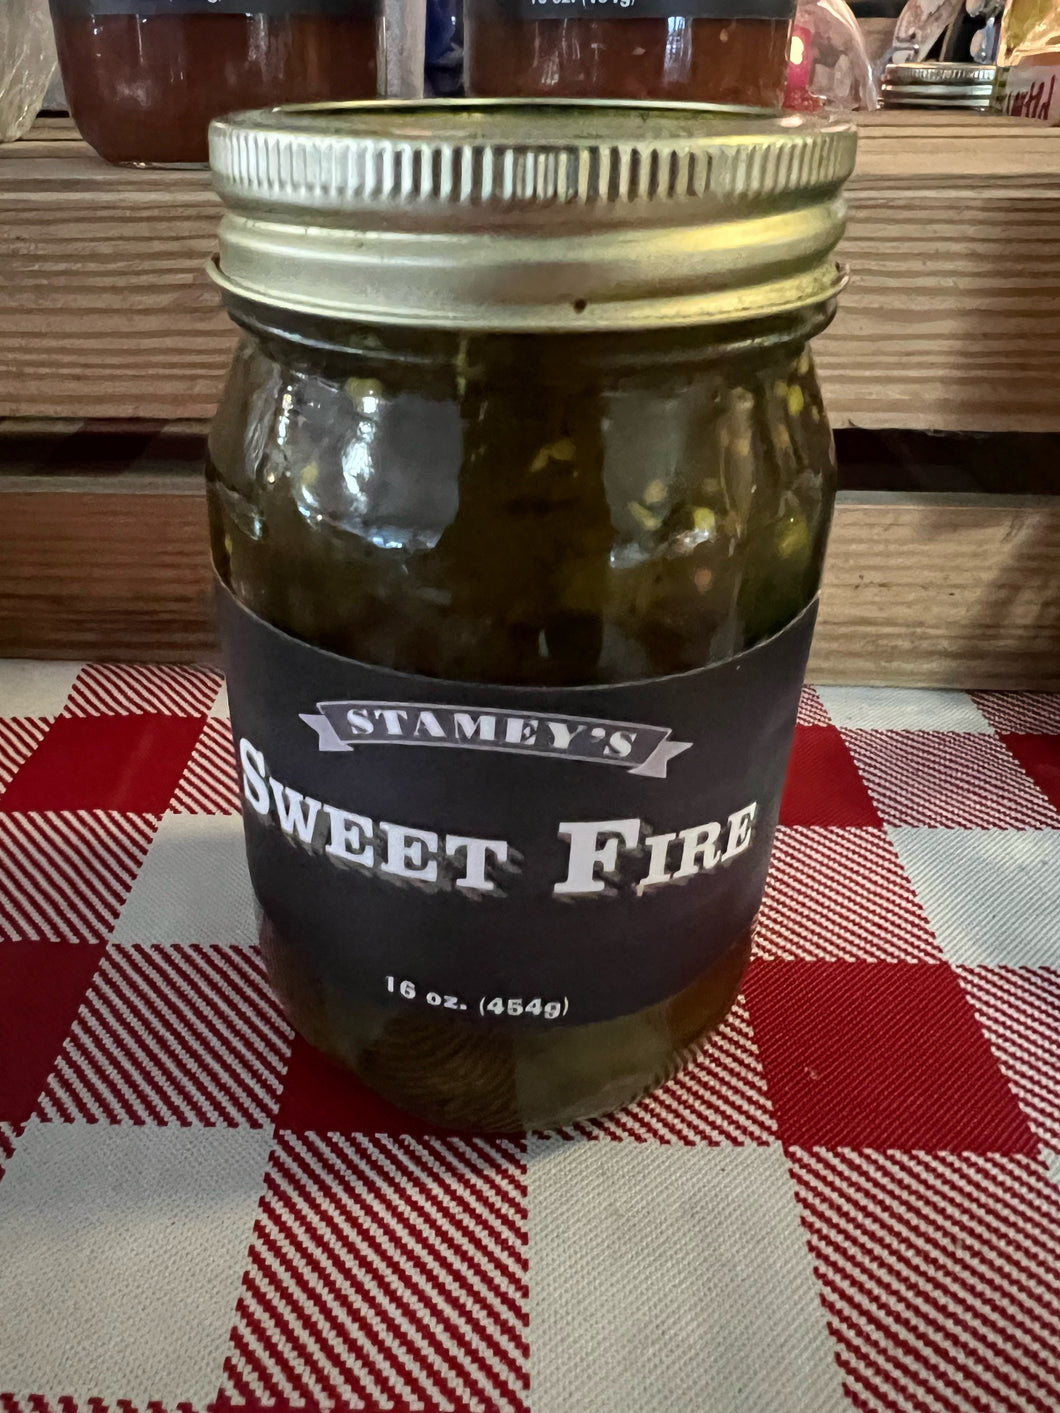 Stamey's Sweet Fire 16 oz